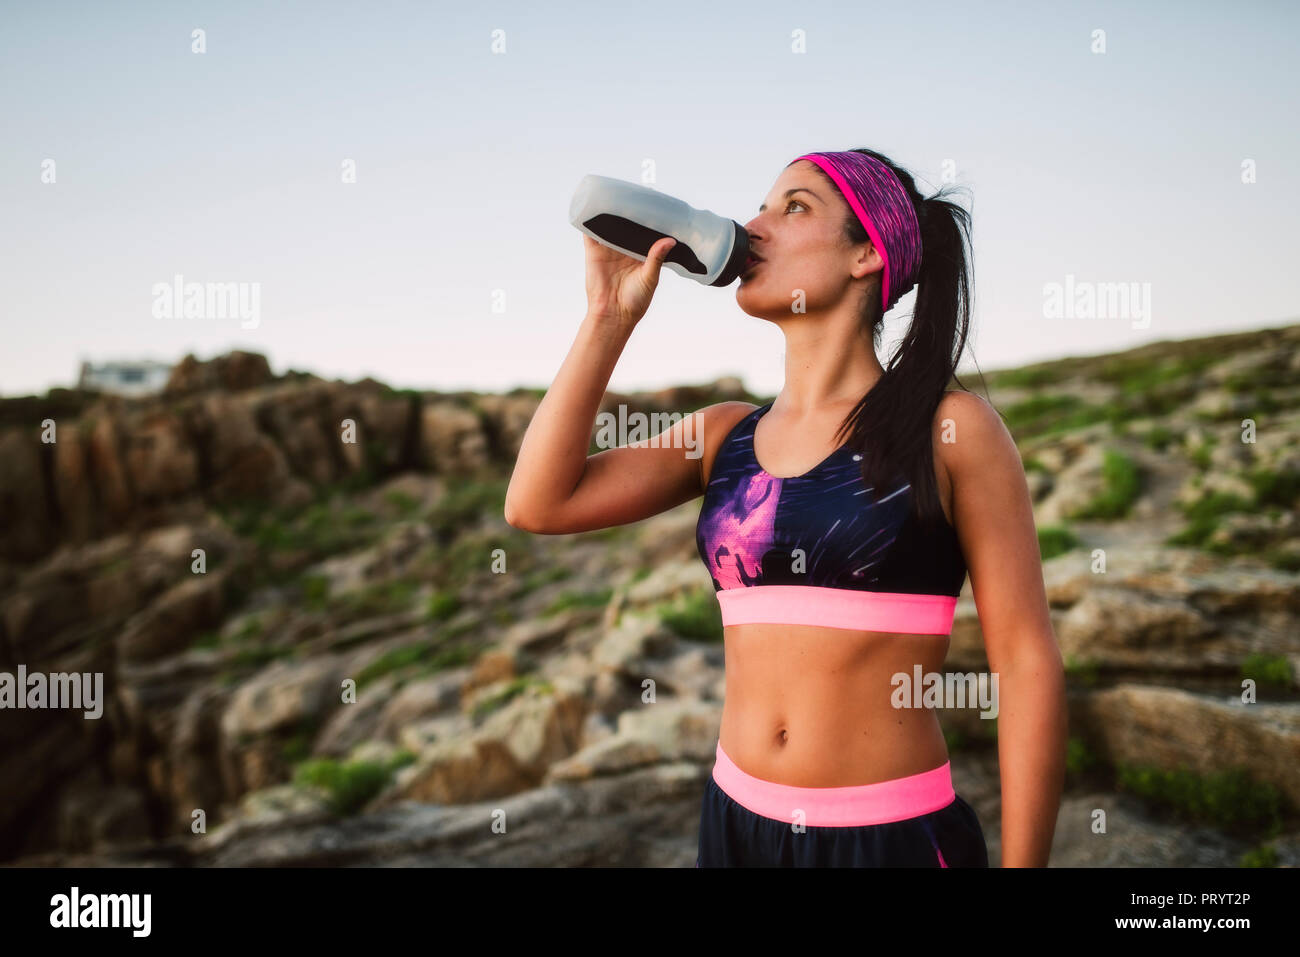 Ritratto di un atleta donna acqua potabile all'aperto Foto Stock